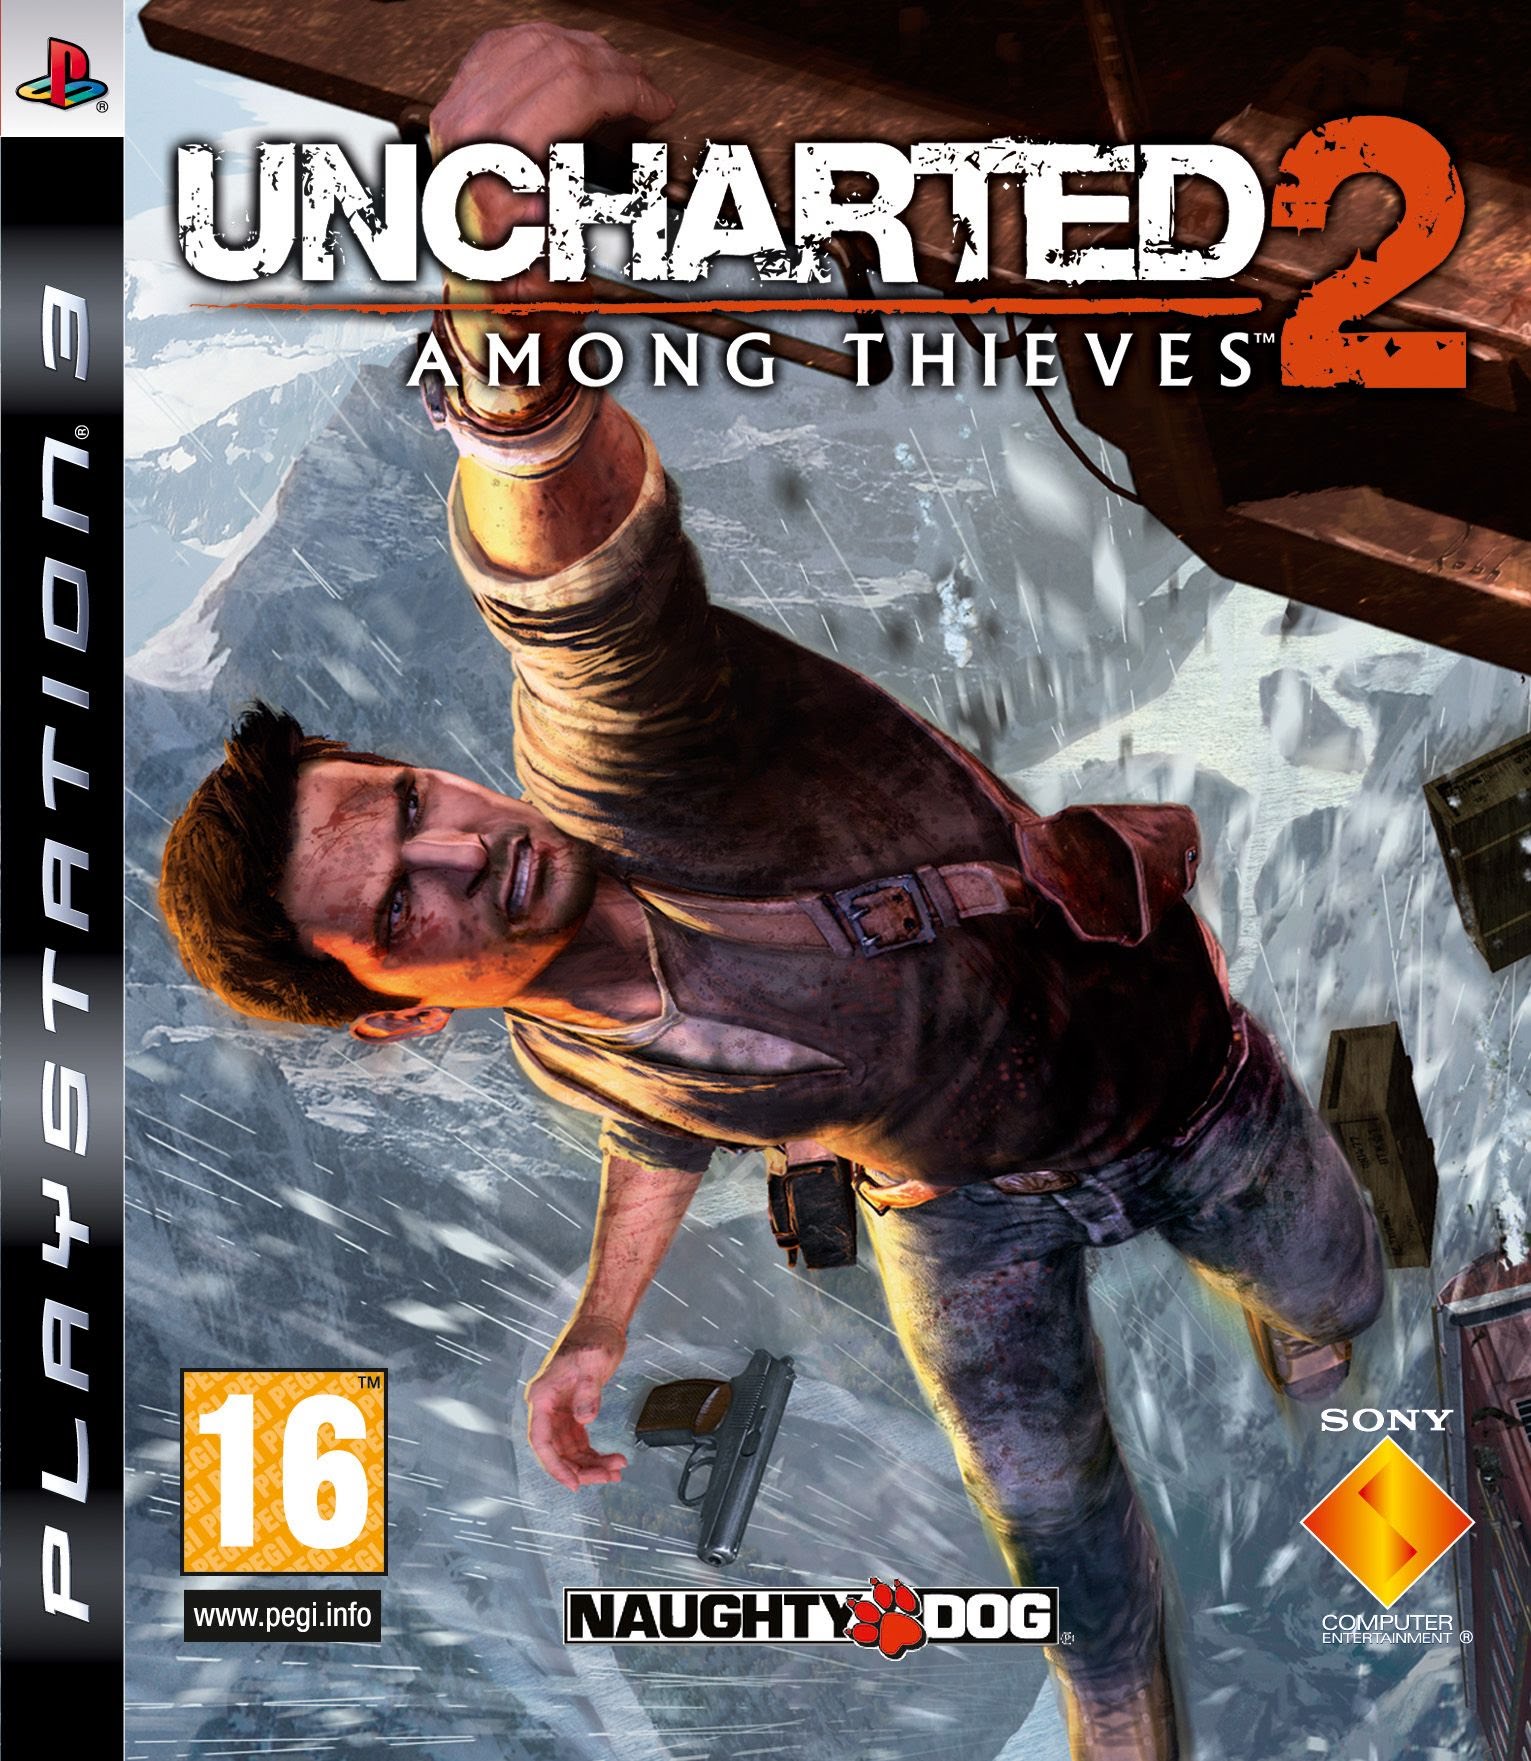 Uncharted 2: Among Thieves - FILME DUBLADO - História Completa 